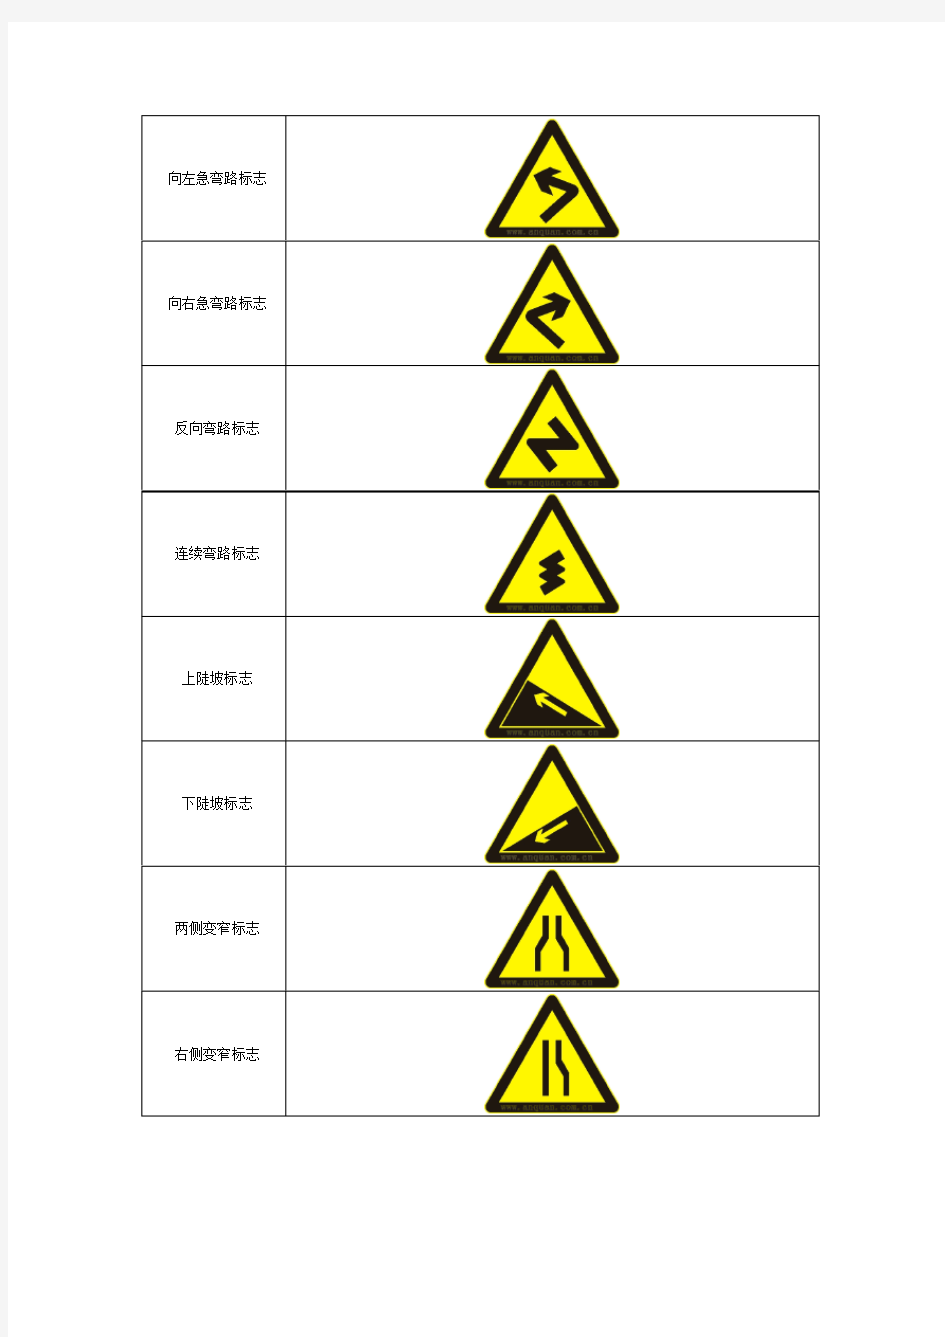 幼儿园安全标志-交通安全标志图